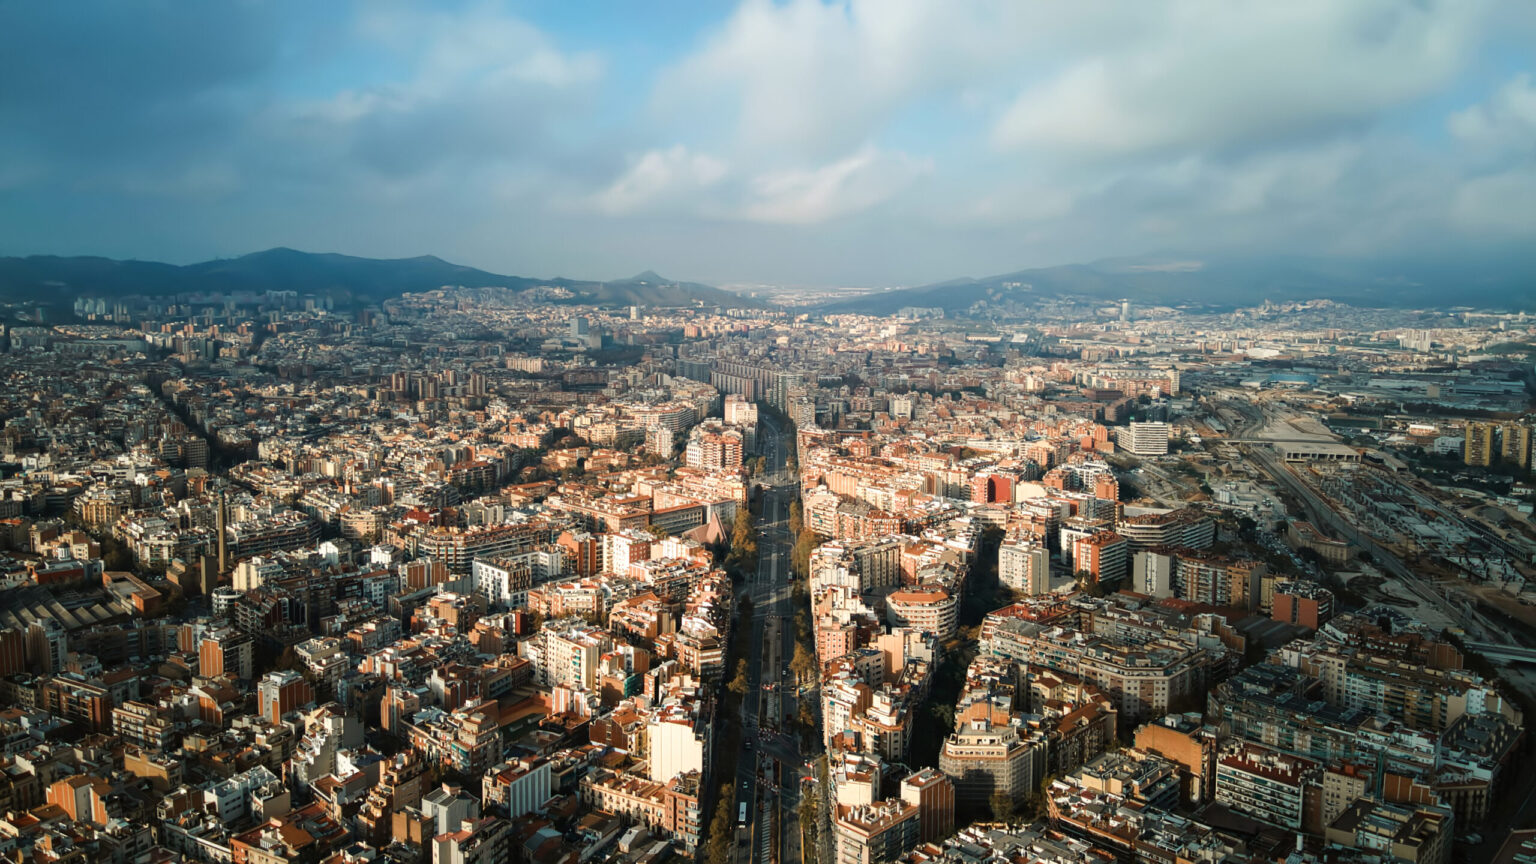 Un juez ordena al Ayuntamiento de Barcelona admitir 120 pisos turísticos por una grieta legal